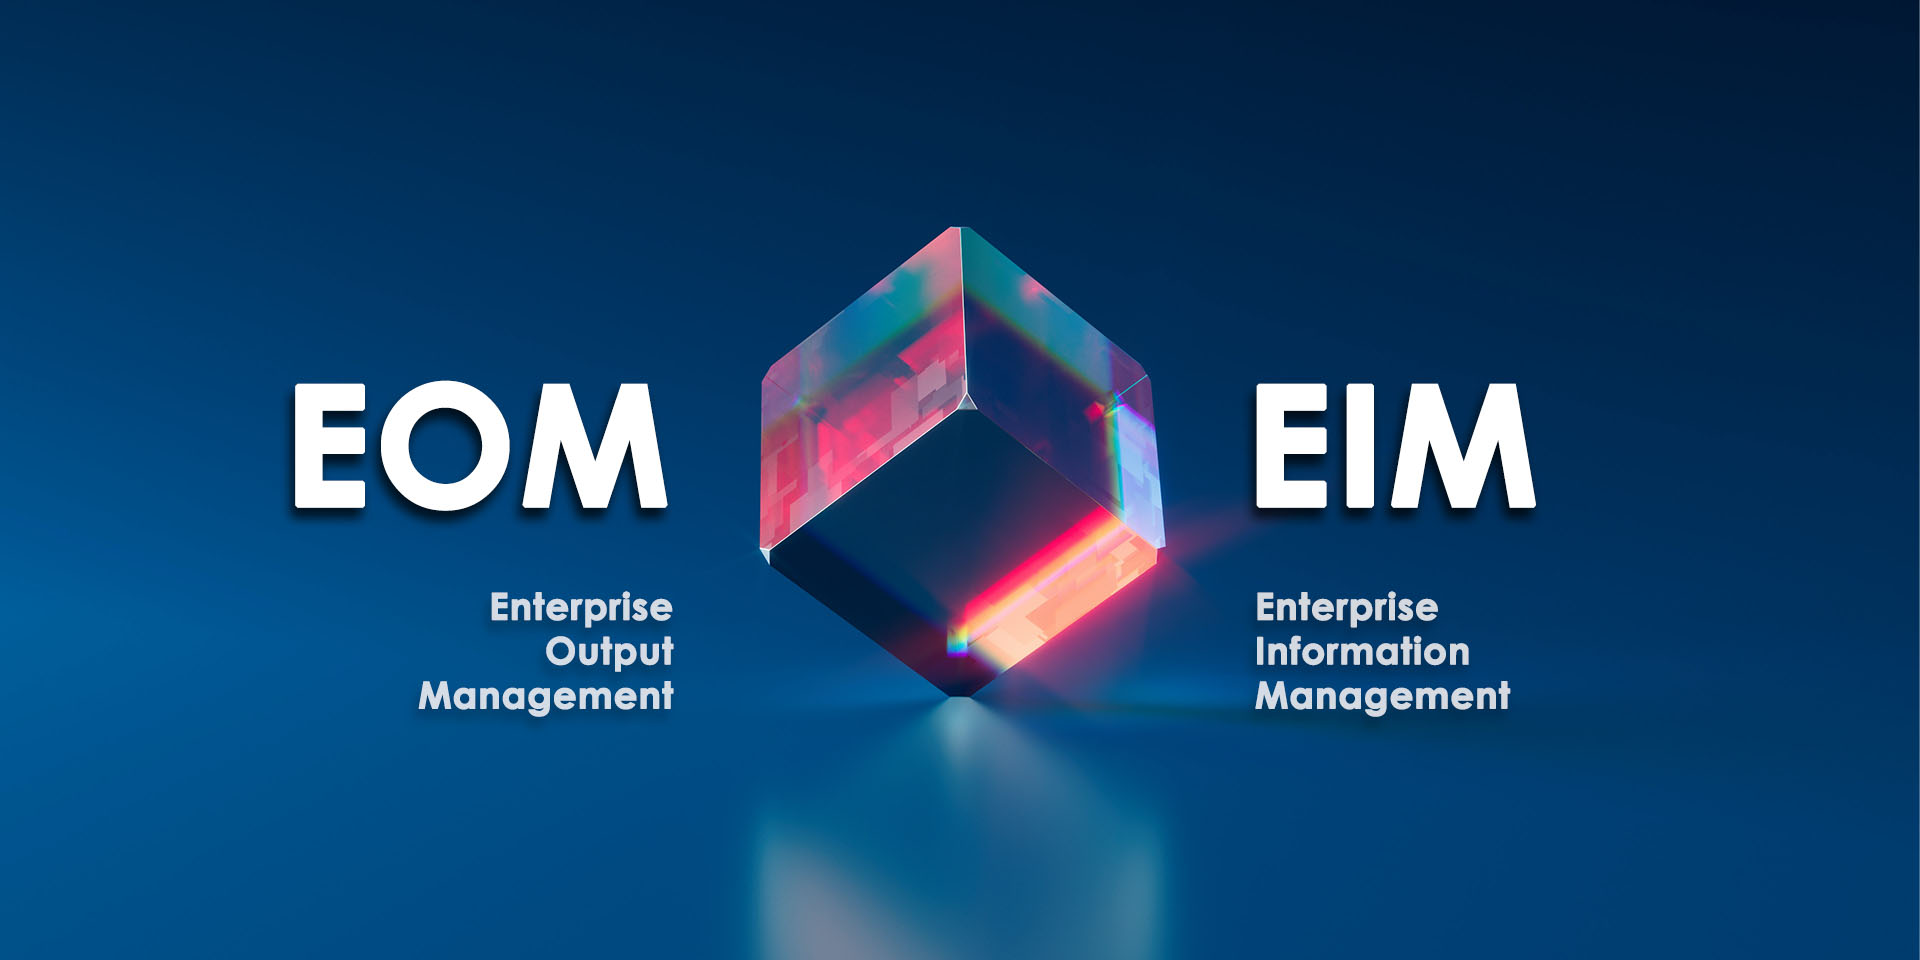 Para entender el concepto de Enterprise Output Management (EOM) antes hay que conocer los fundamentos que lo sustentan. Nos referimos a Enterprise Information Management (EIM).